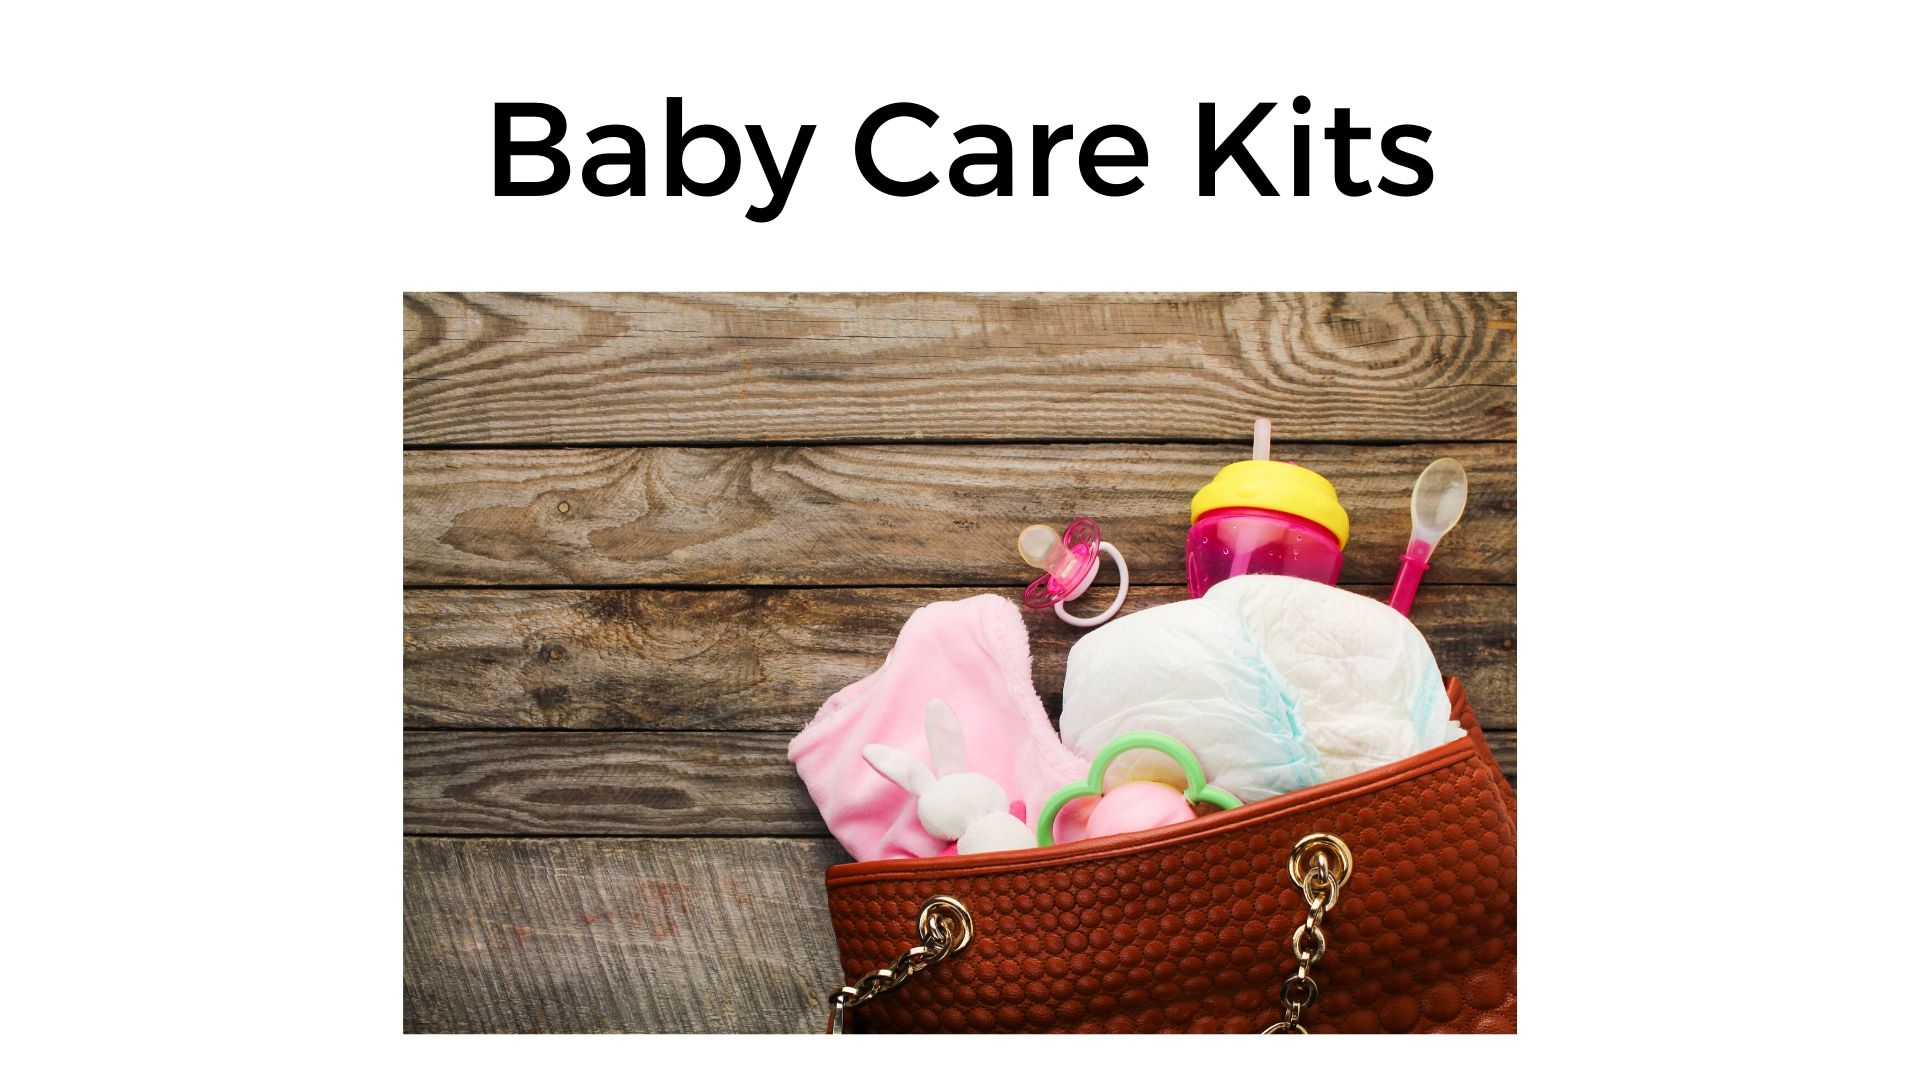 Baby Care Kits